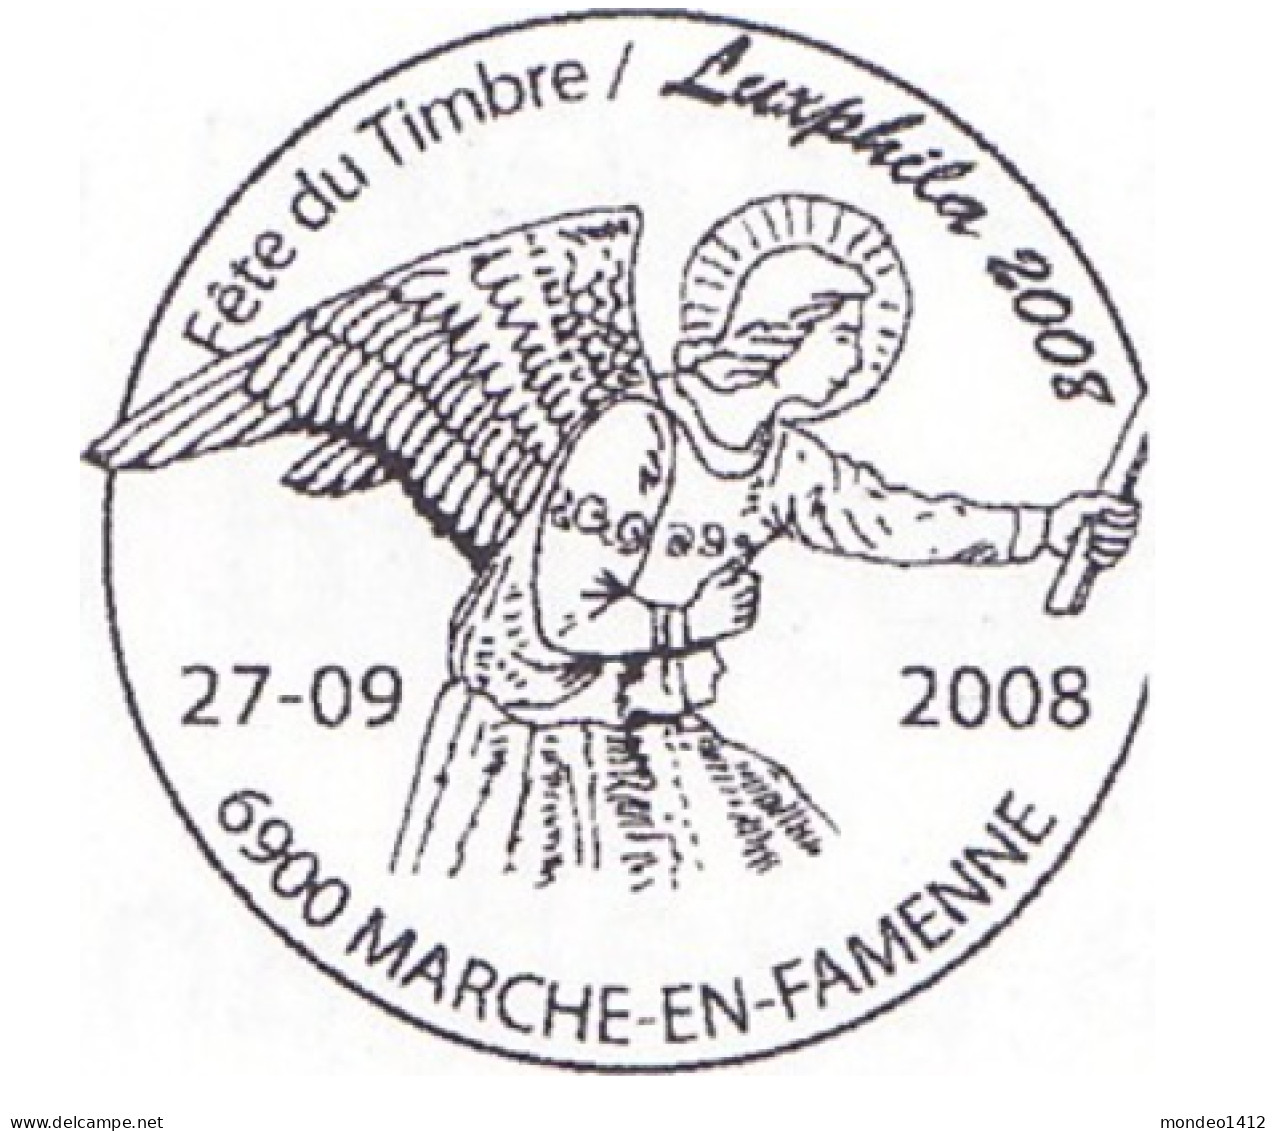 België OBP 3830 - St.-Gabriel Gilde - Used Stamps